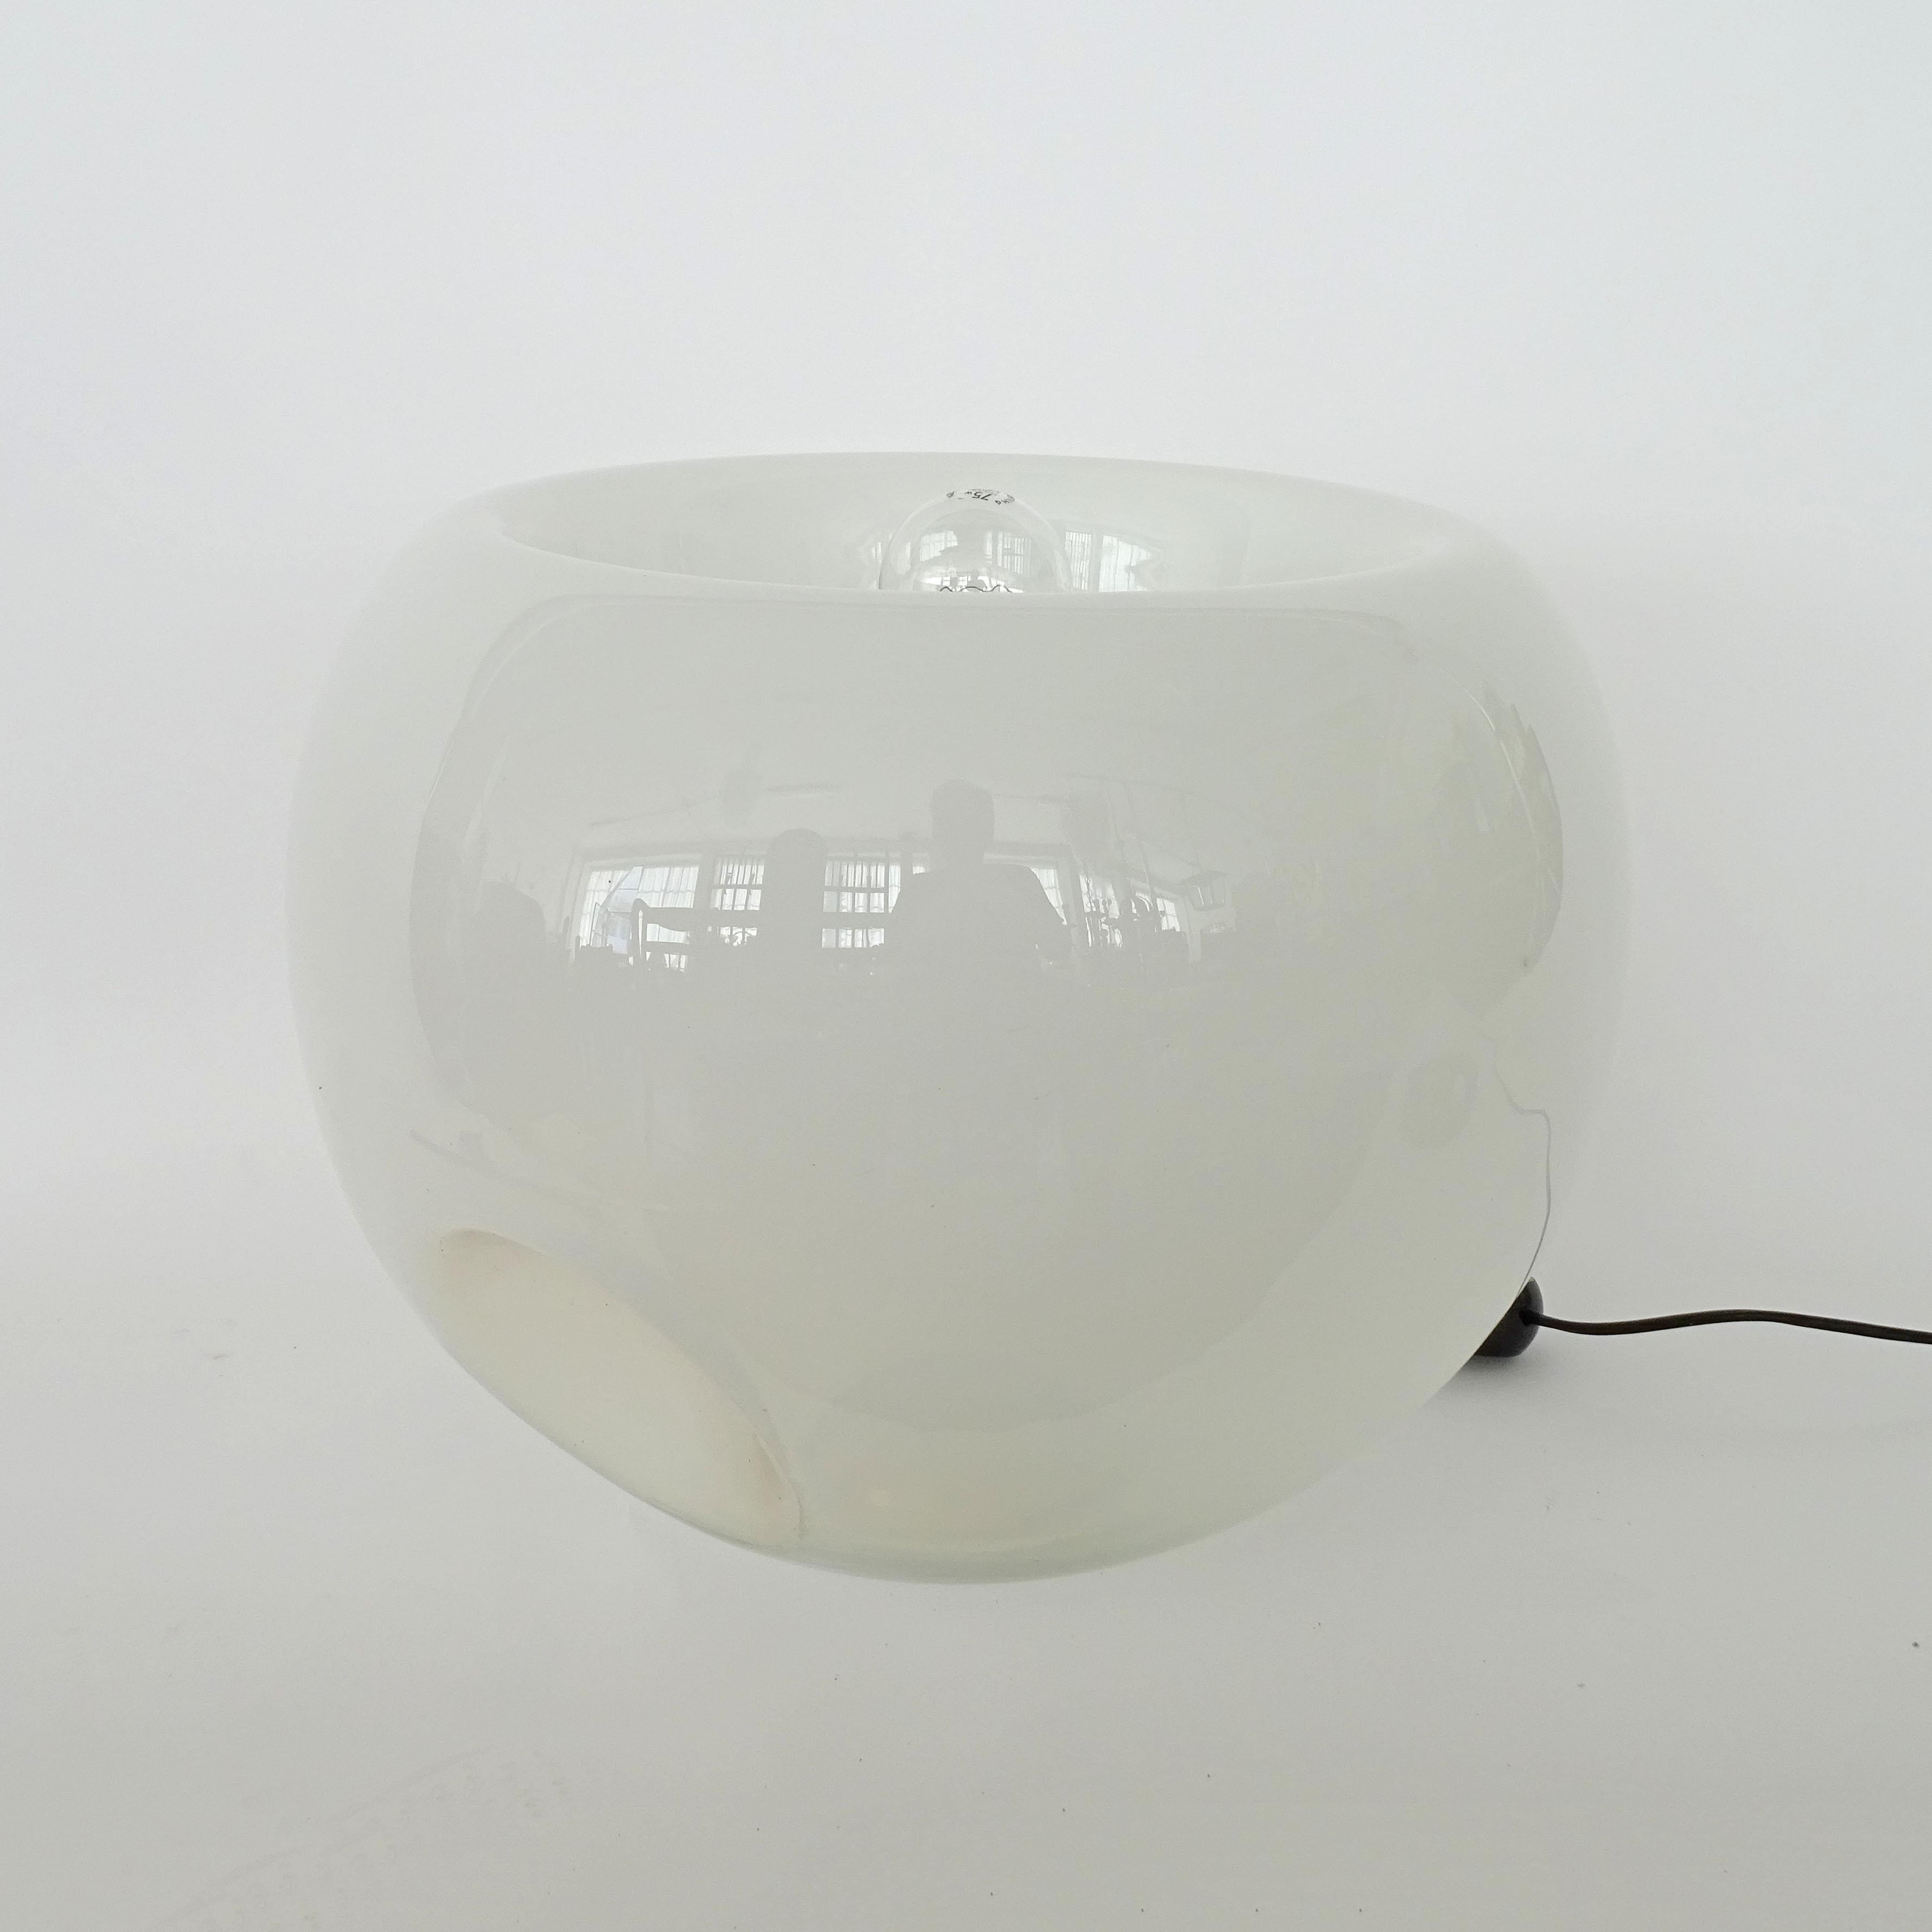 Mid-Century Modern Eleonore Peduzzi Riva Vacuna Murano Glass Table Lamp for Artemide, 1968 For Sale